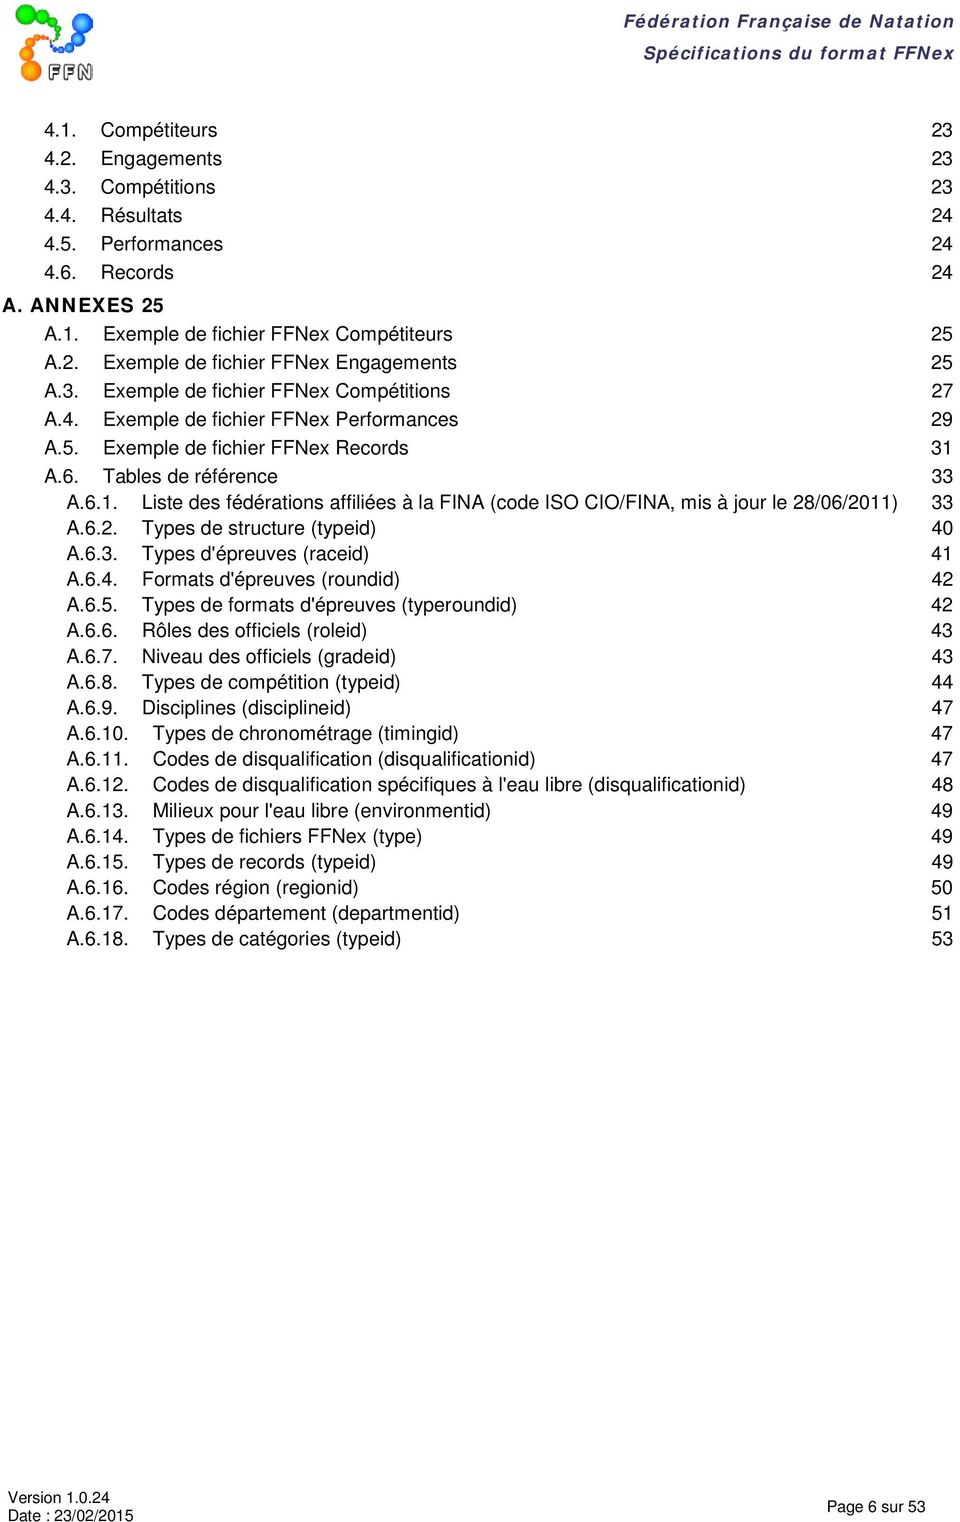 A.6. Tables de référence 33 A.6.1. Liste des fédérations affiliées à la FINA (code ISO CIO/FINA, mis à jour le 28/06/2011) 33 A.6.2. Types de structure (typeid) 40 A.6.3. Types d'épreuves (raceid) 41 A.